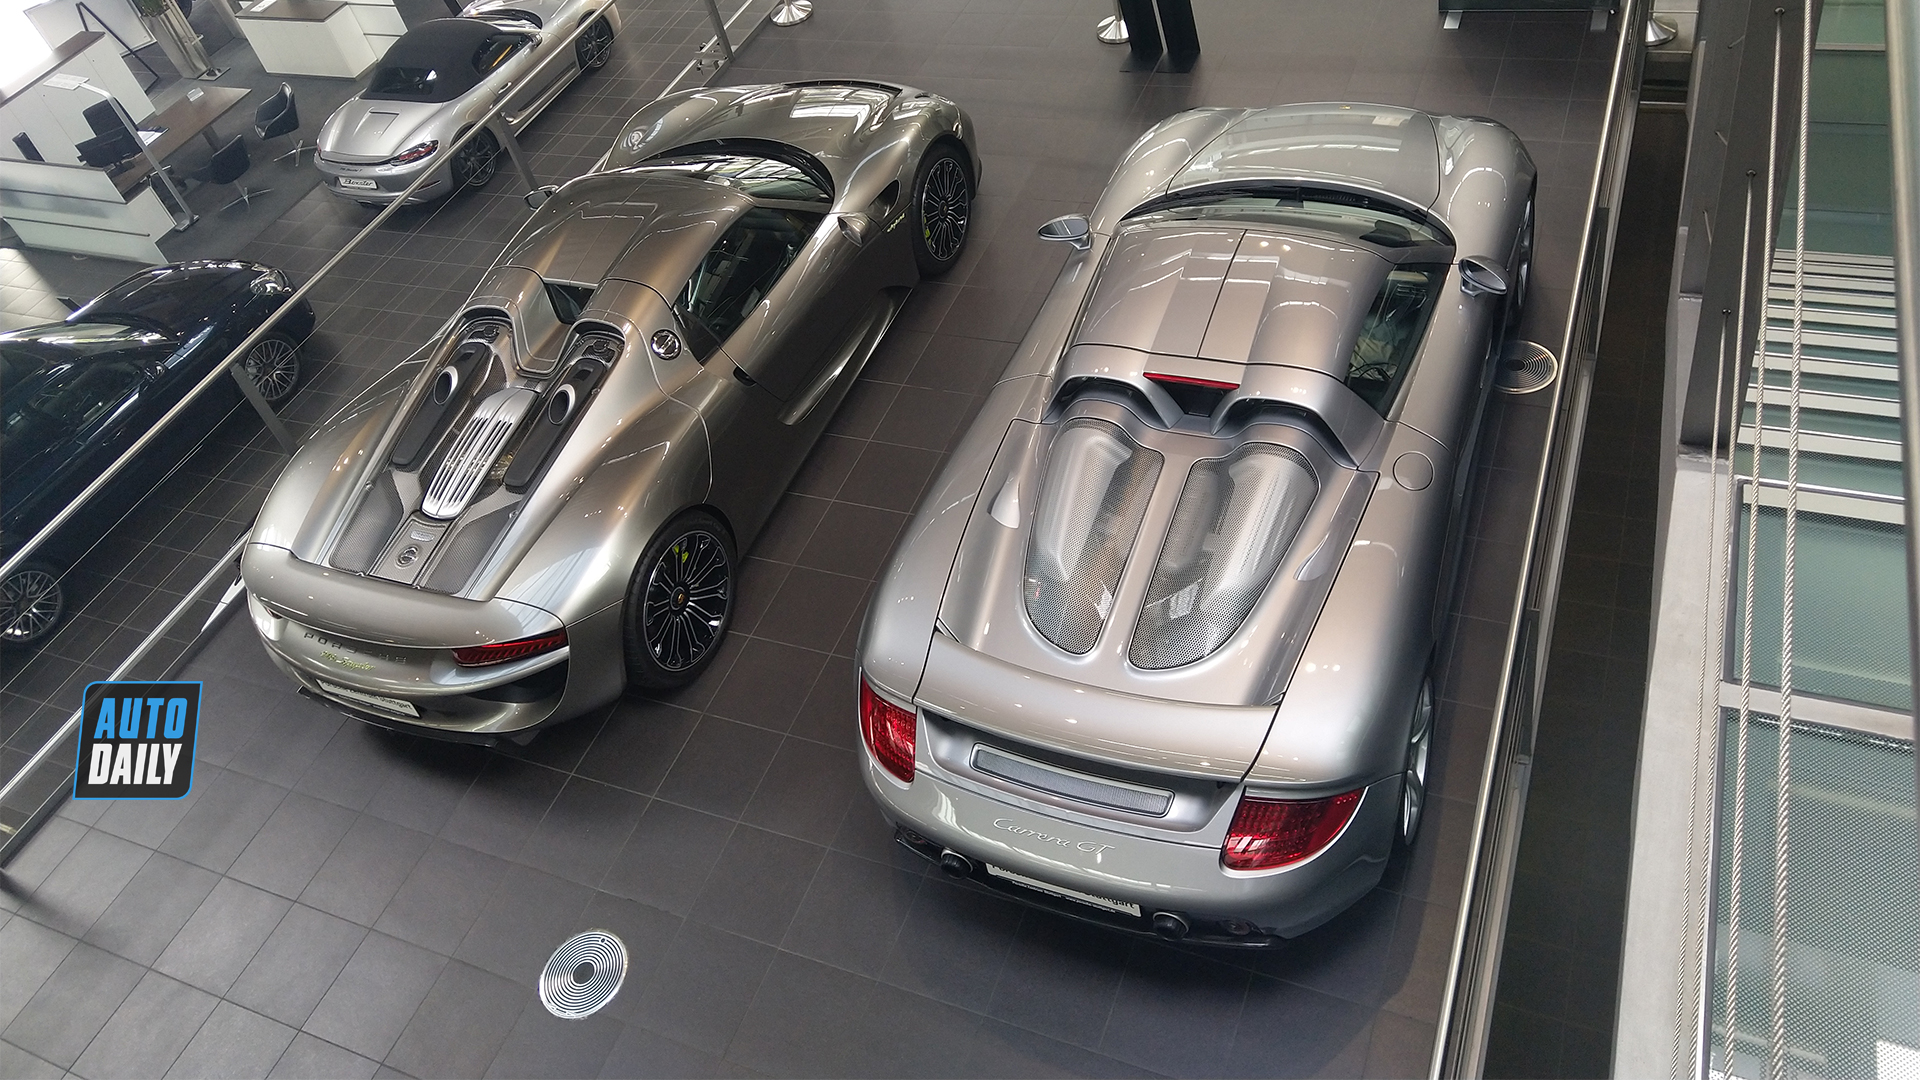 Đột nhập showroom Porsche trăm tỷ với toàn hàng khủng